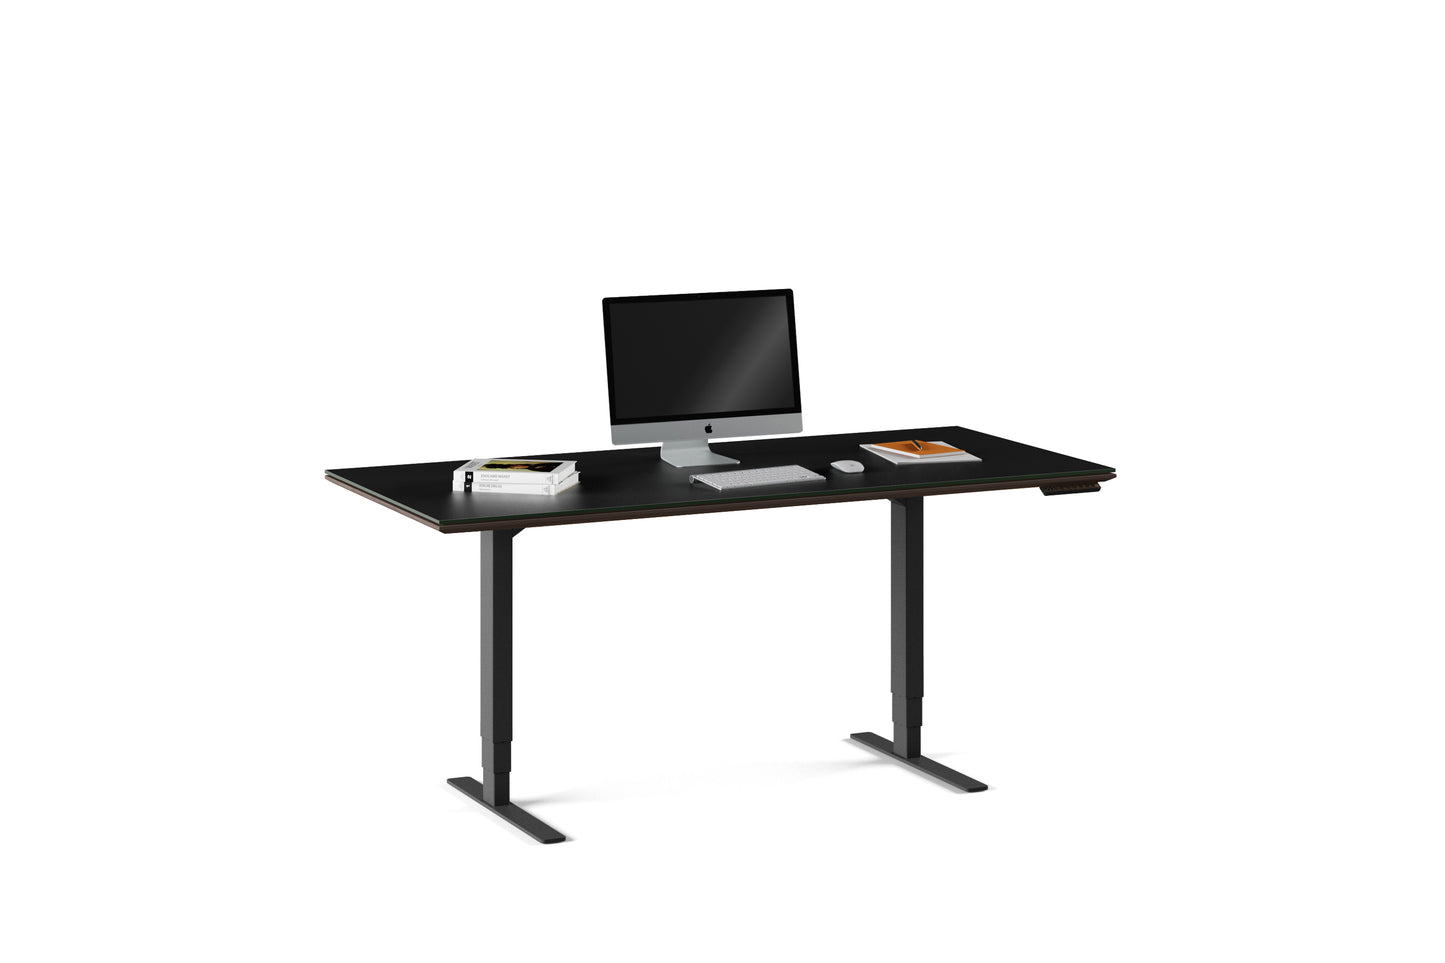 Sequel 6152 Height Adjustable Standing Desk - 66"x30"